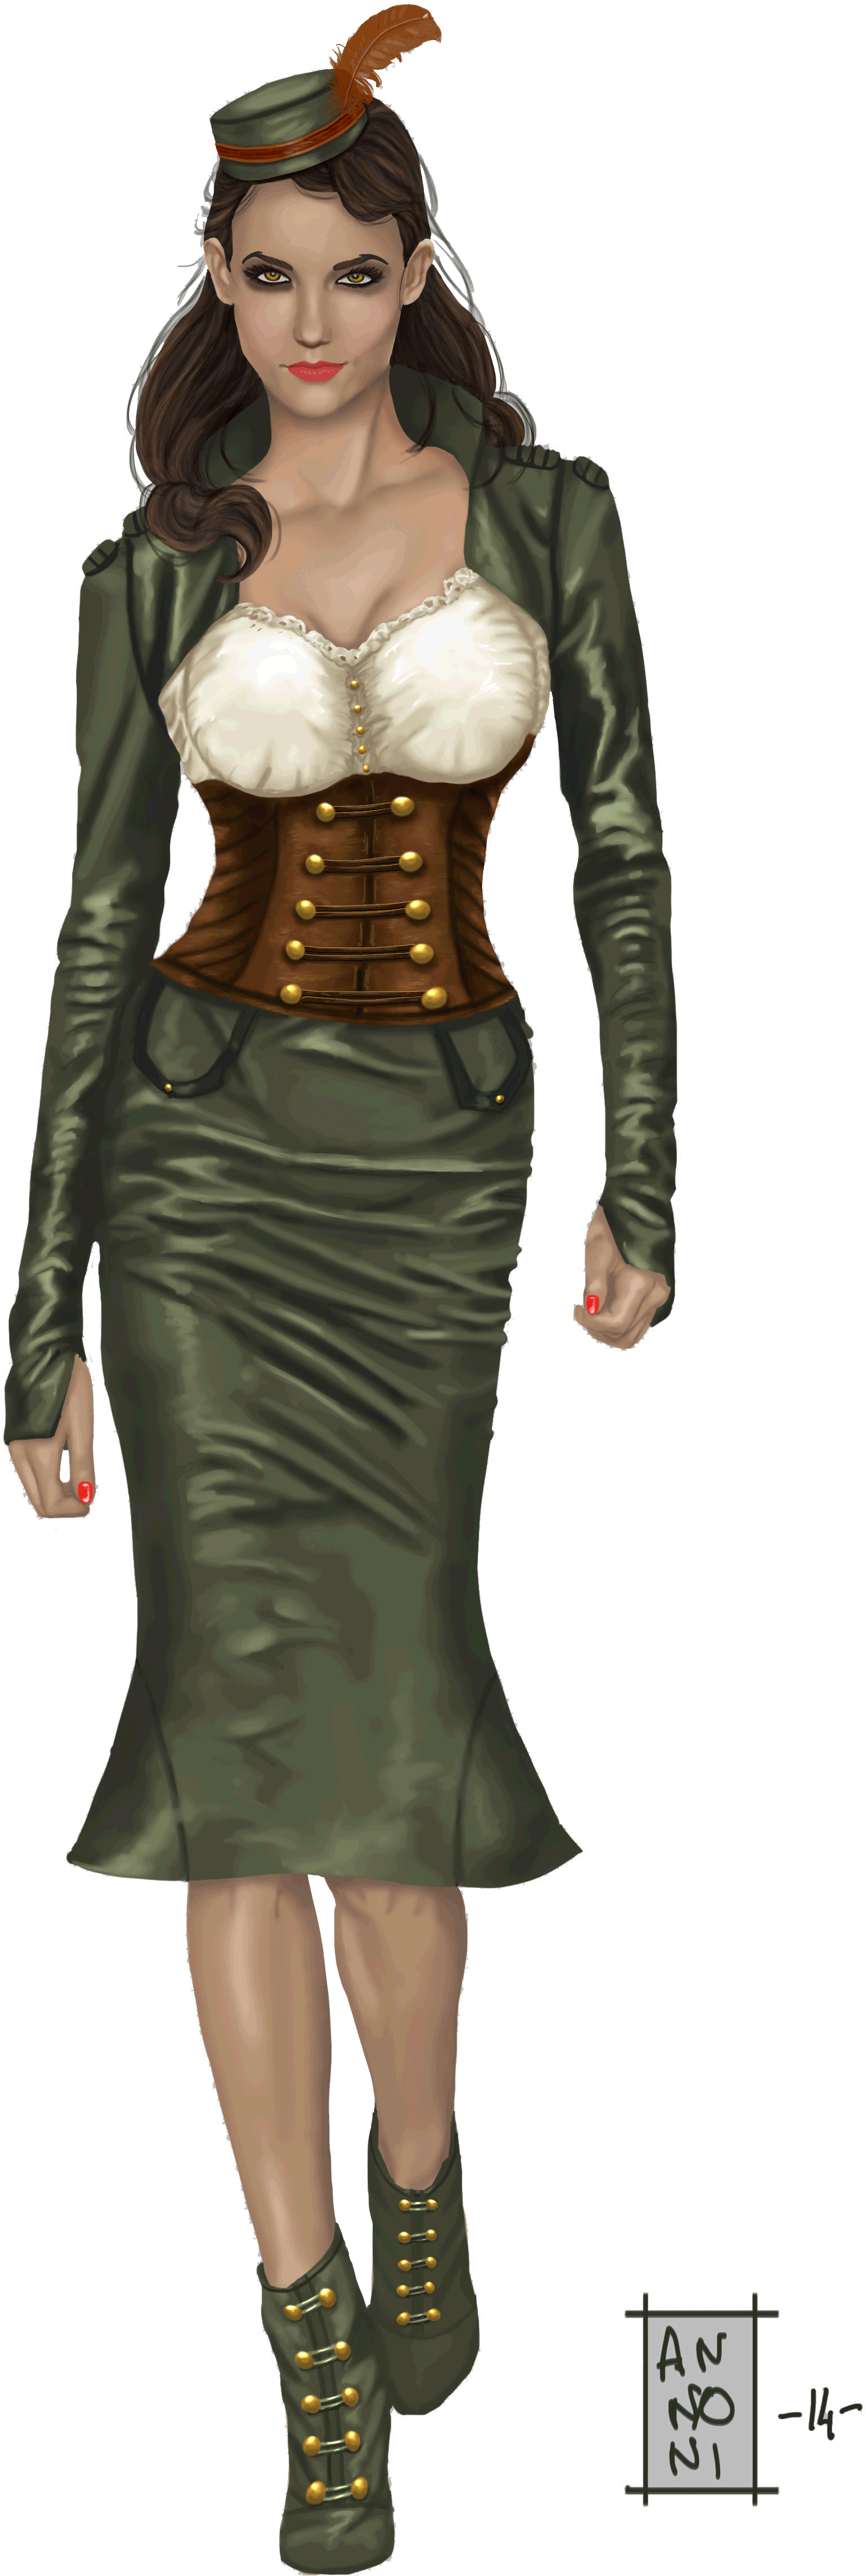 Une femme dans une robe khaki avec un corset en cuir brun et une chemise blanche